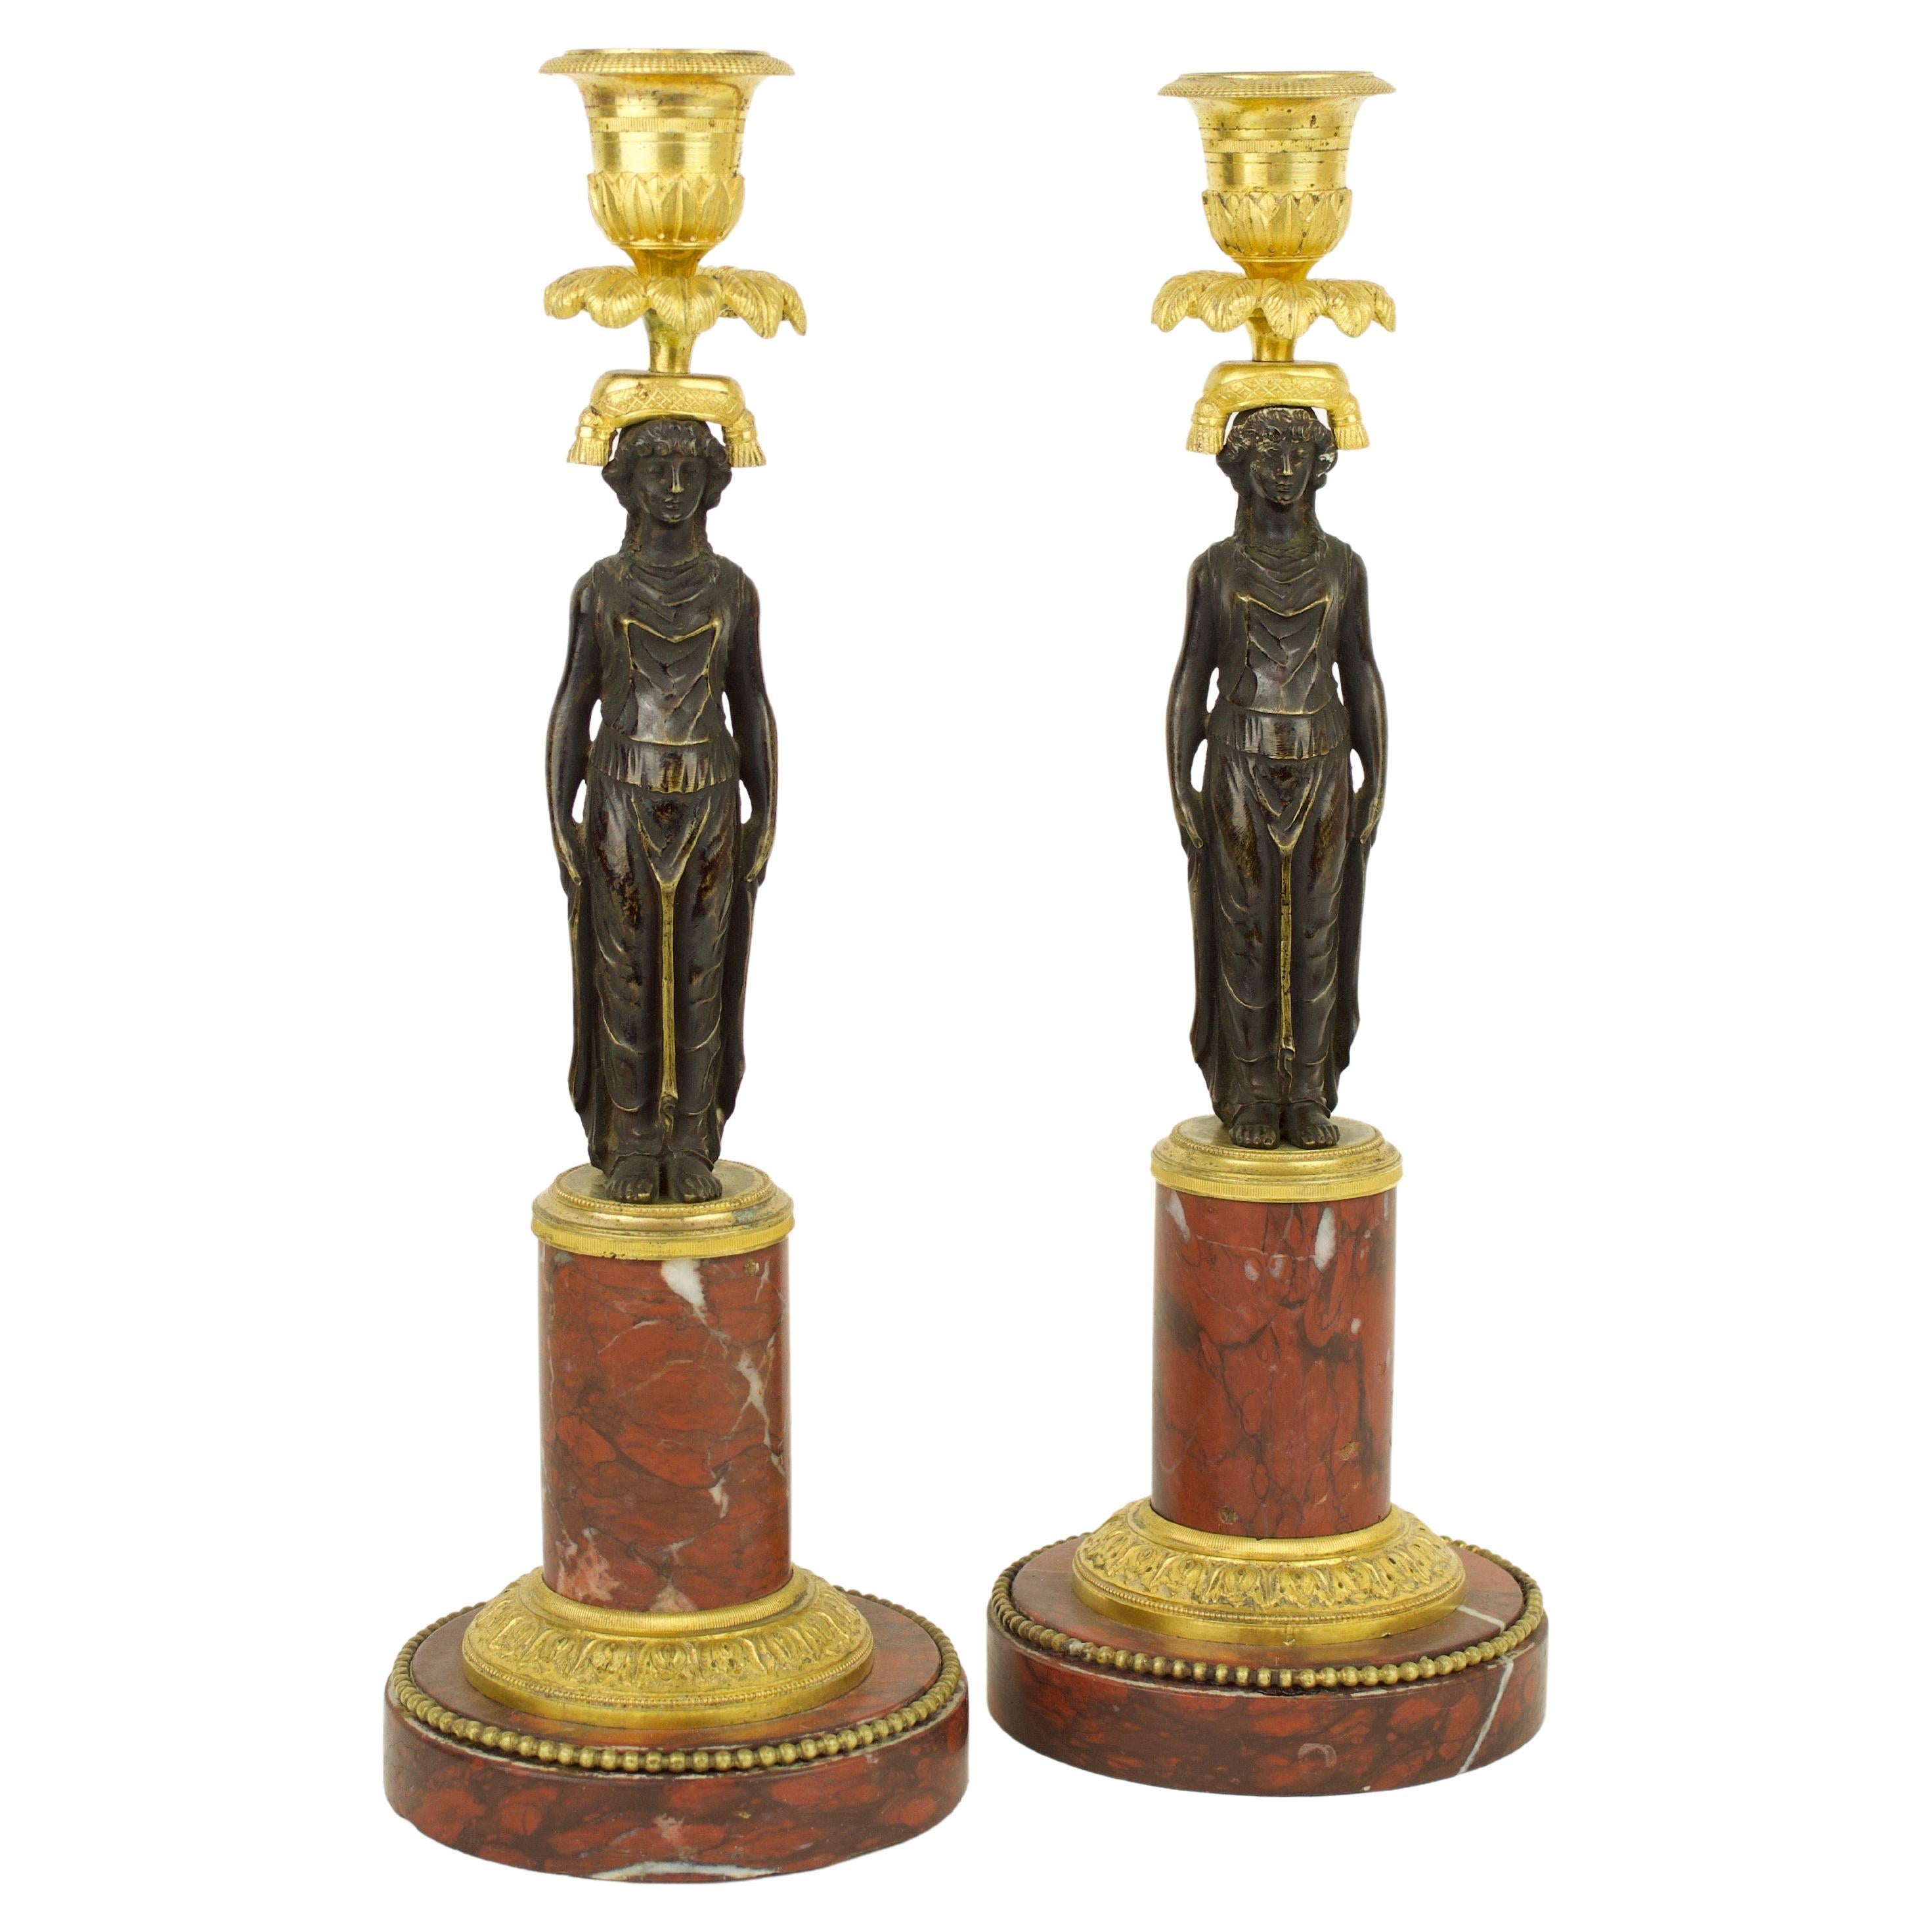 Paire de chandeliers de style Empire à gilet en bronze doré et patiné représentant des figures féminines